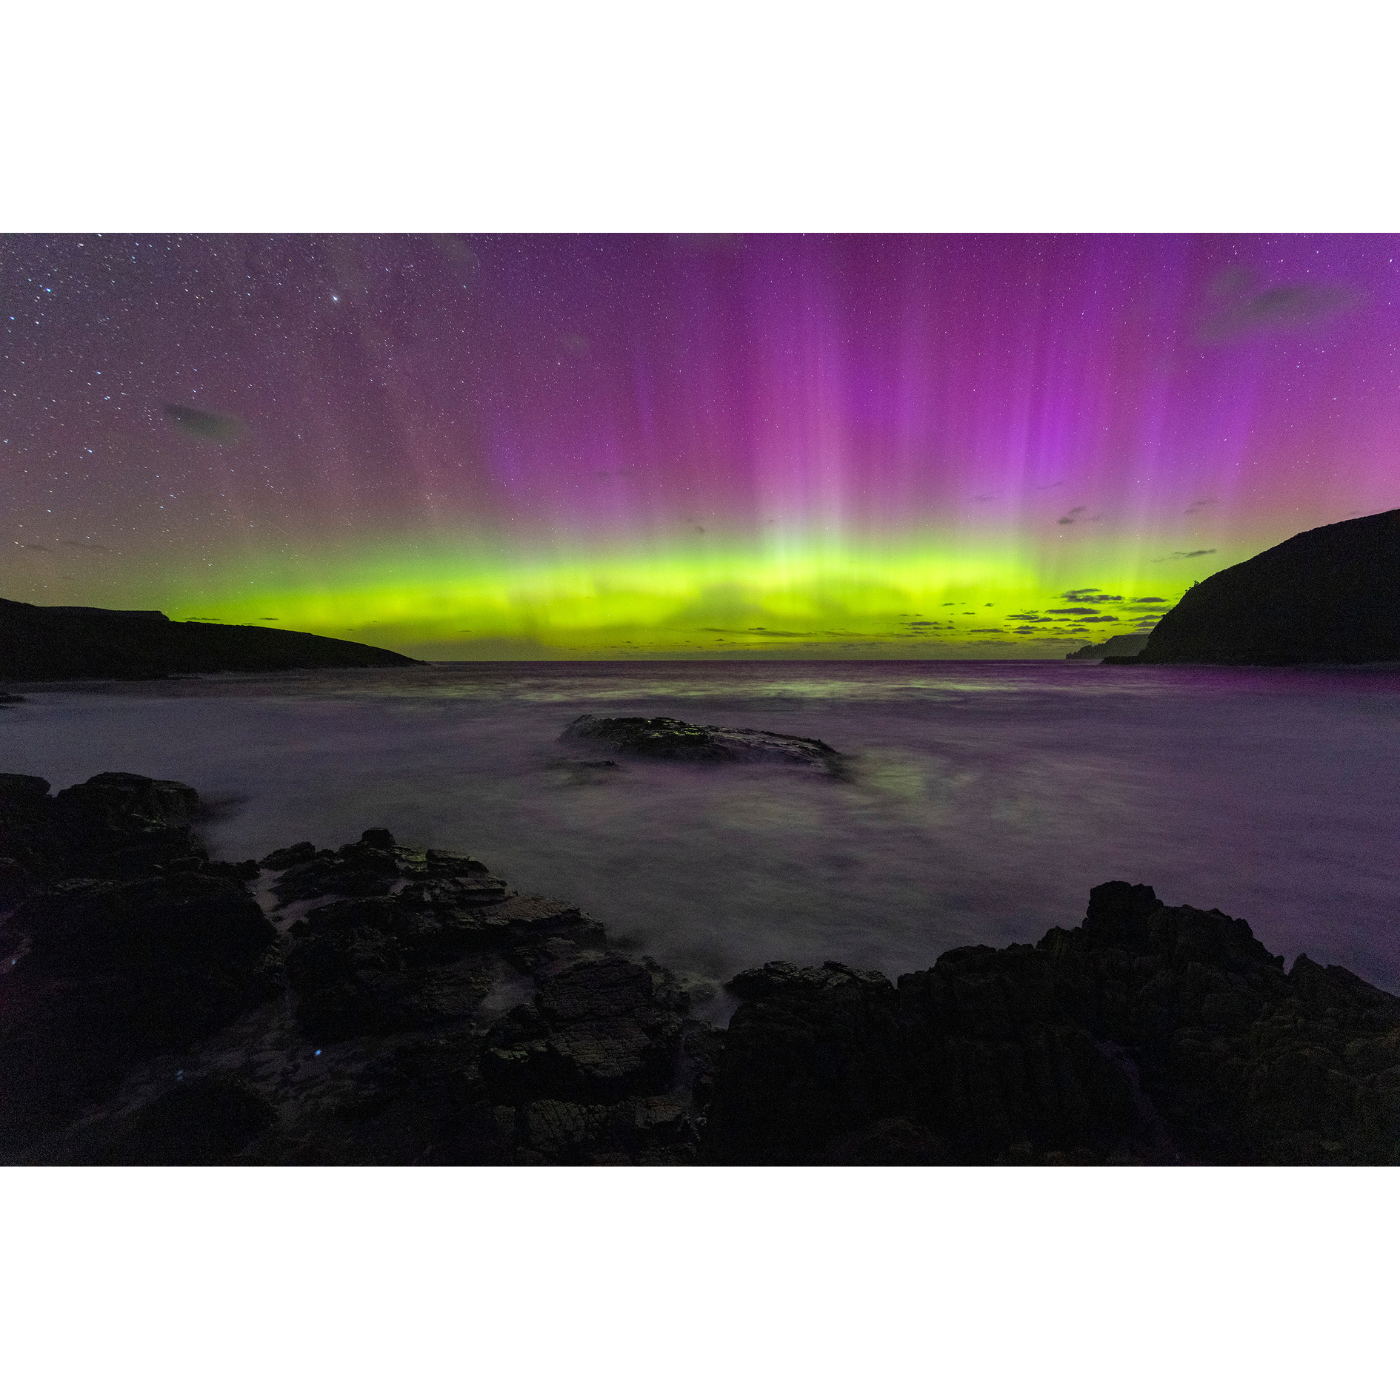 Luke O'Brien - Aurora Australis, Tasman Peninsula